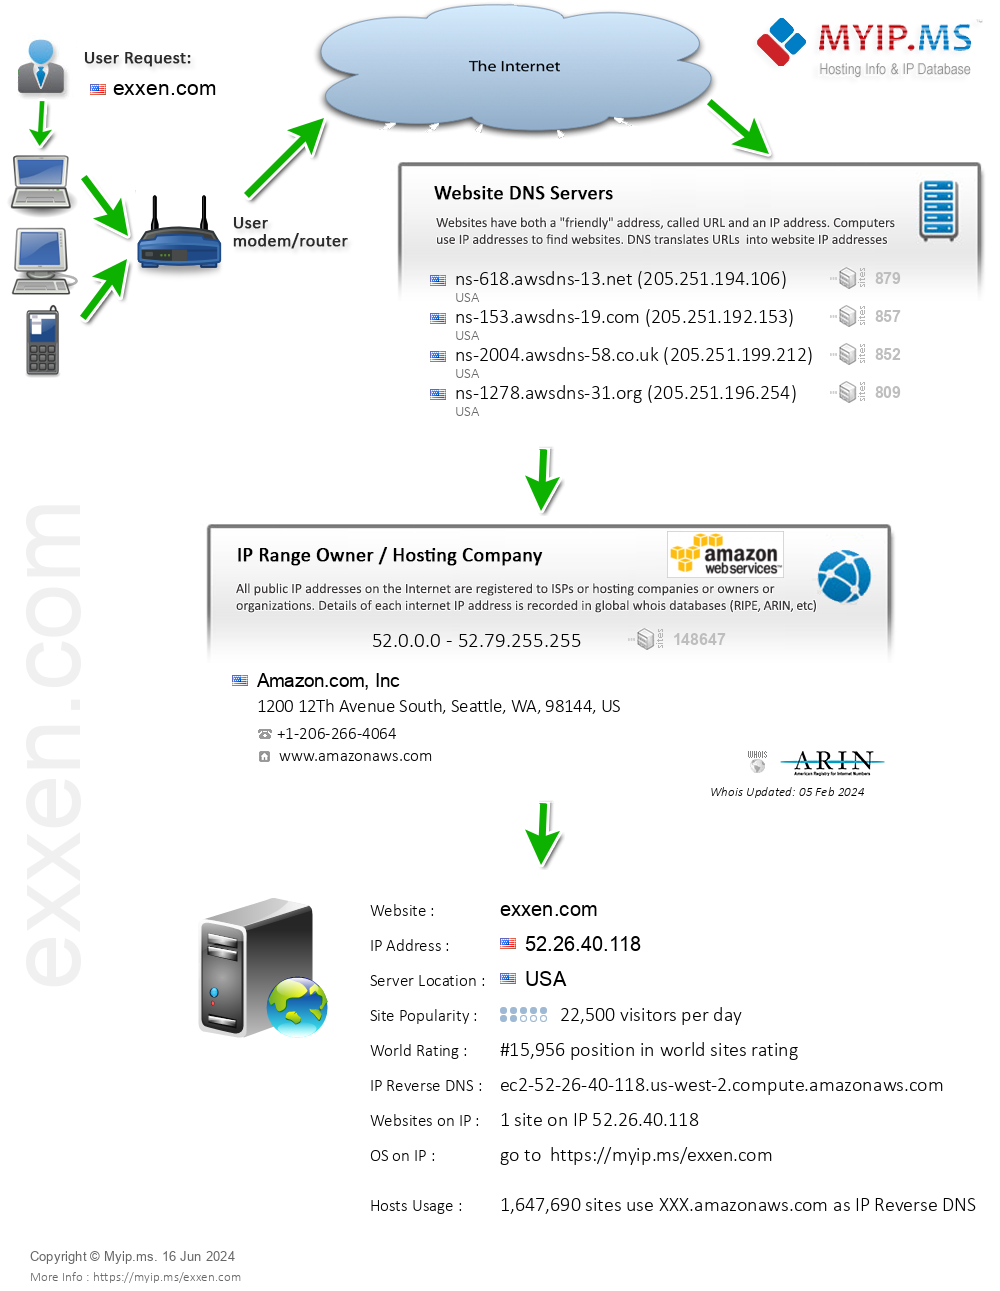 Exxen.com - Website Hosting Visual IP Diagram